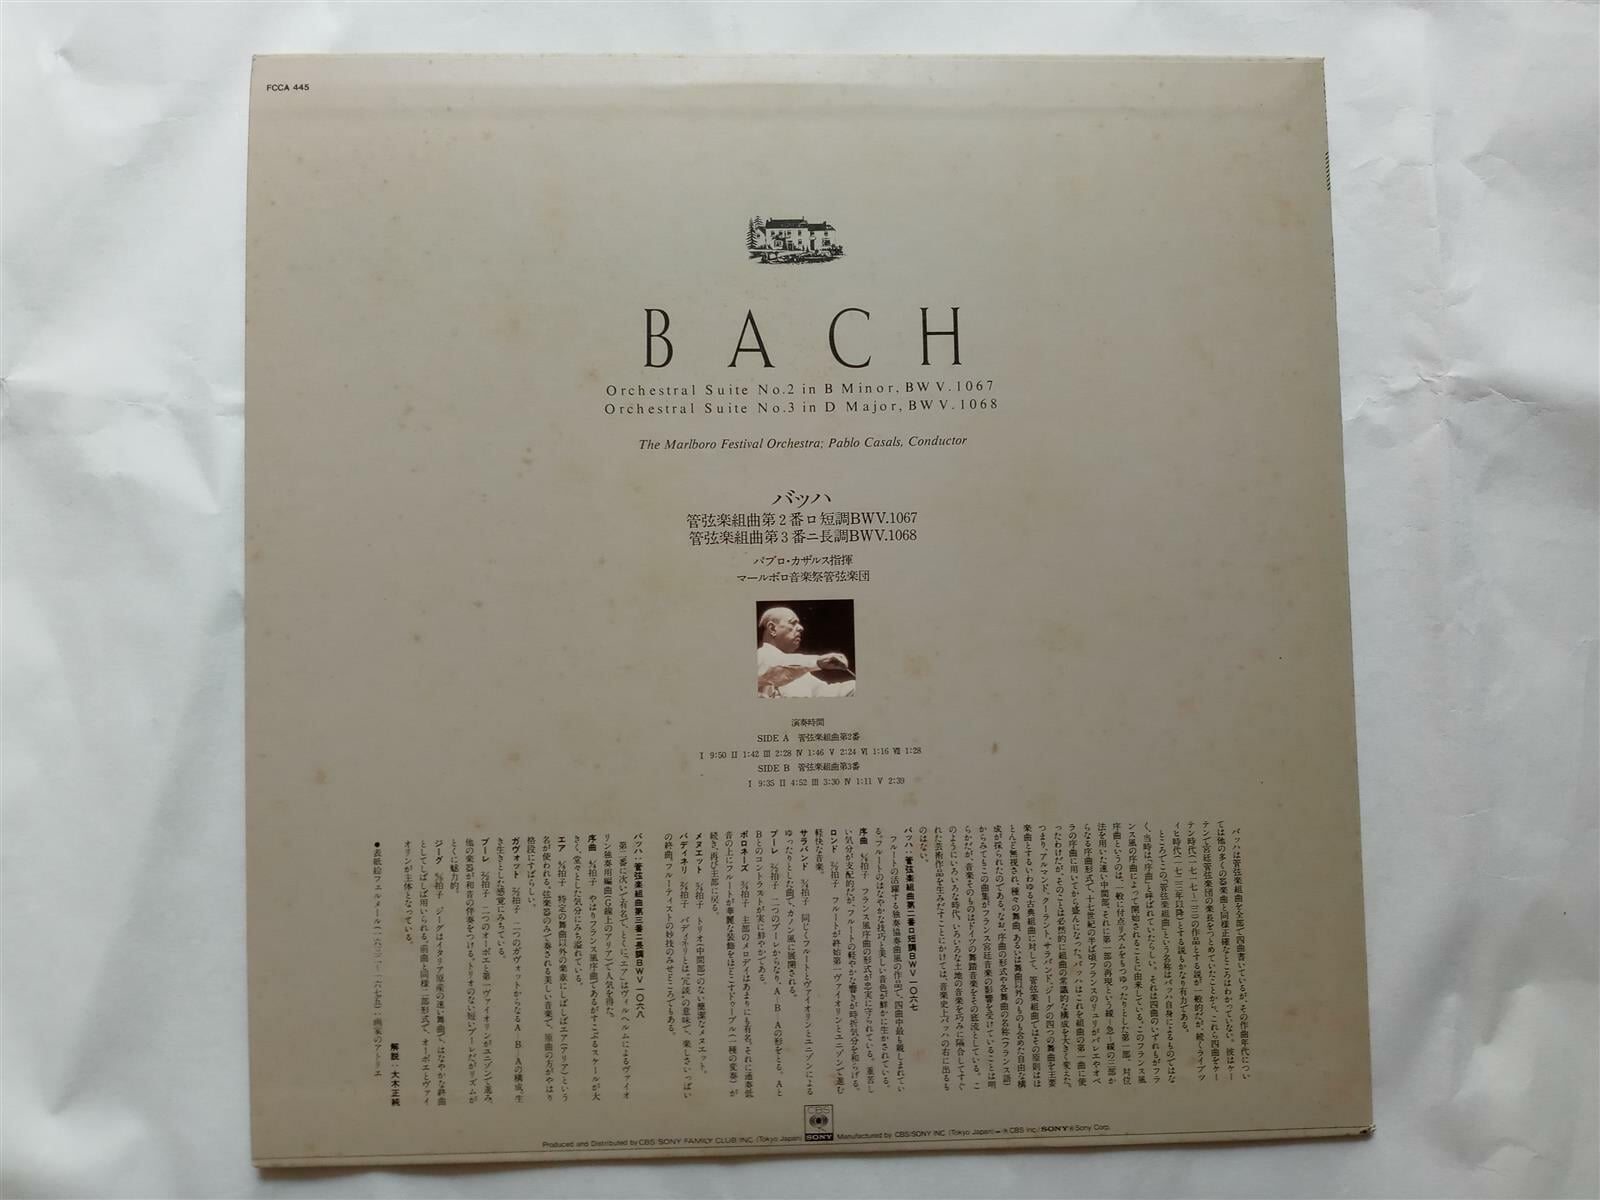 LP(수입) 바흐: Orchestral Suites Nos.2 & 3 관현악 모음곡 - 카잘스 / 말보로 페스티벌 오케스트라